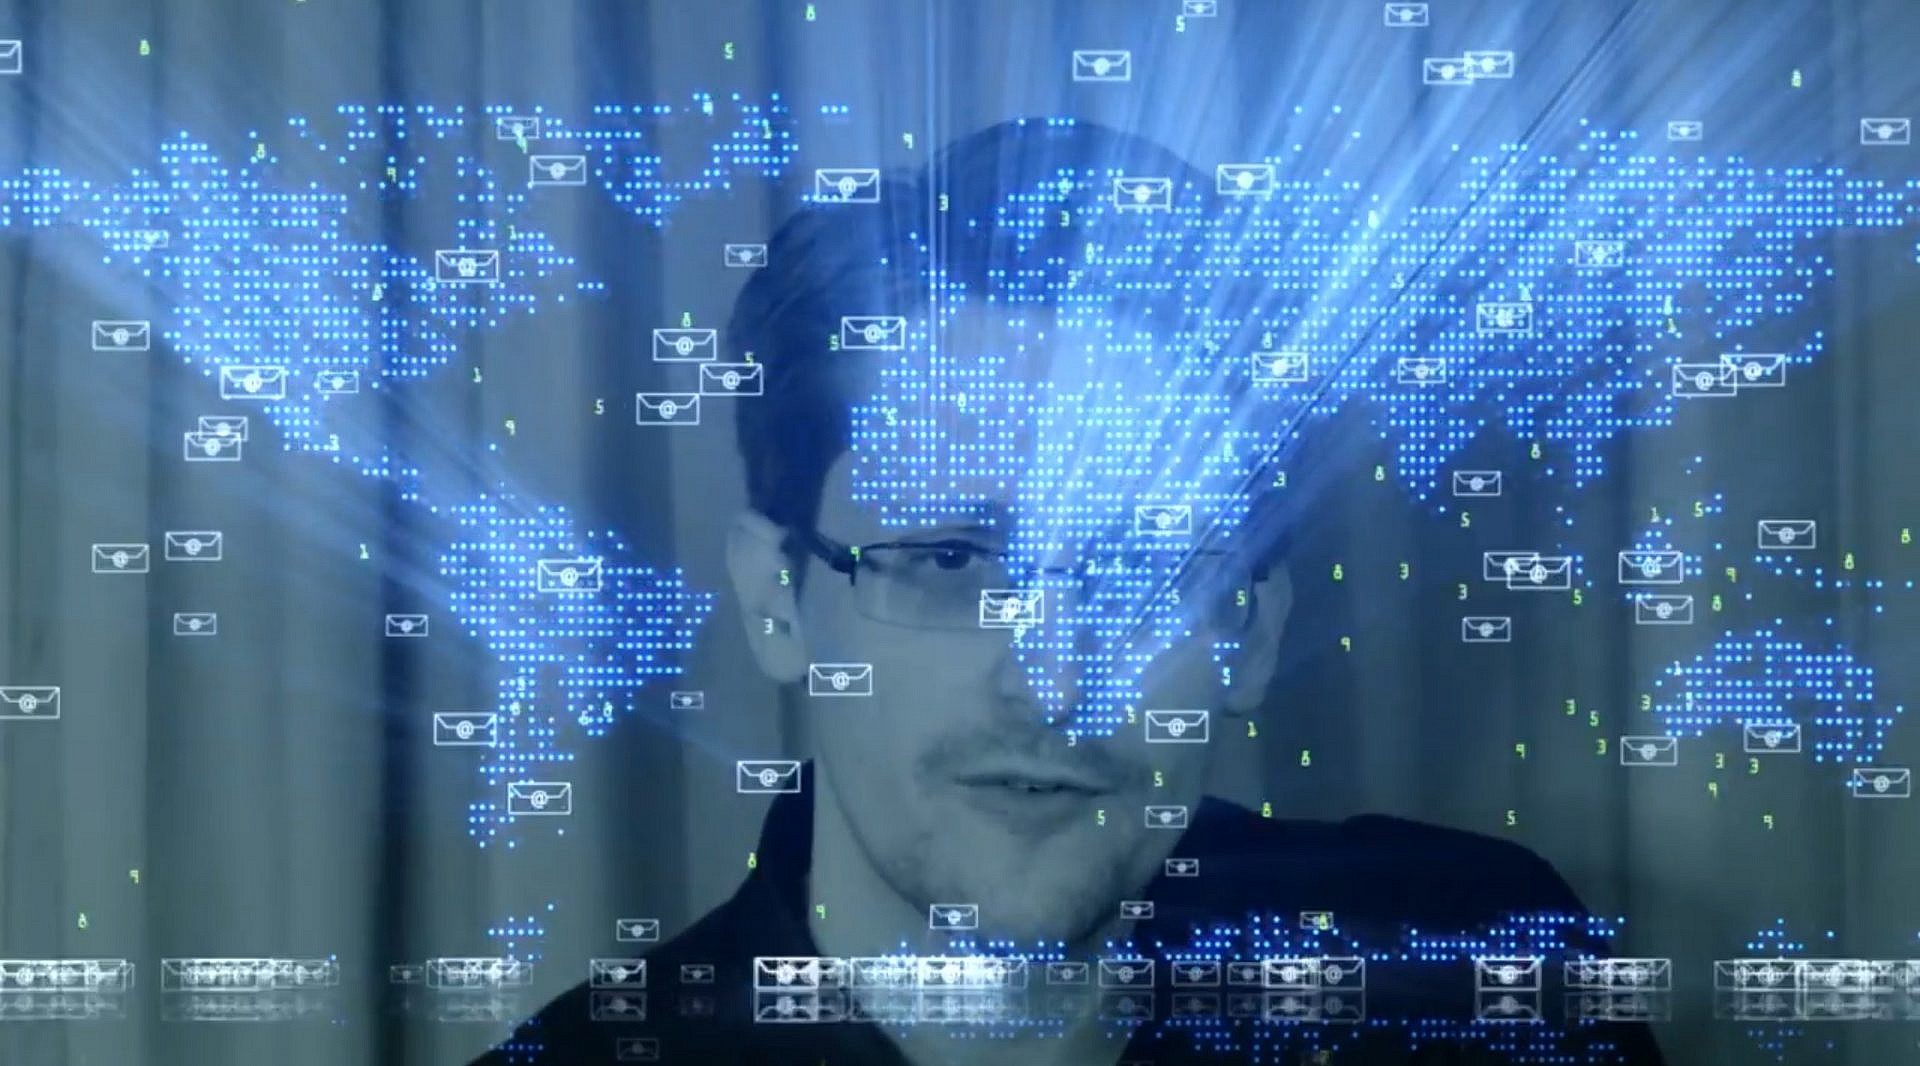 ชมผลงาน Music Video ของนาย Edward Snowden